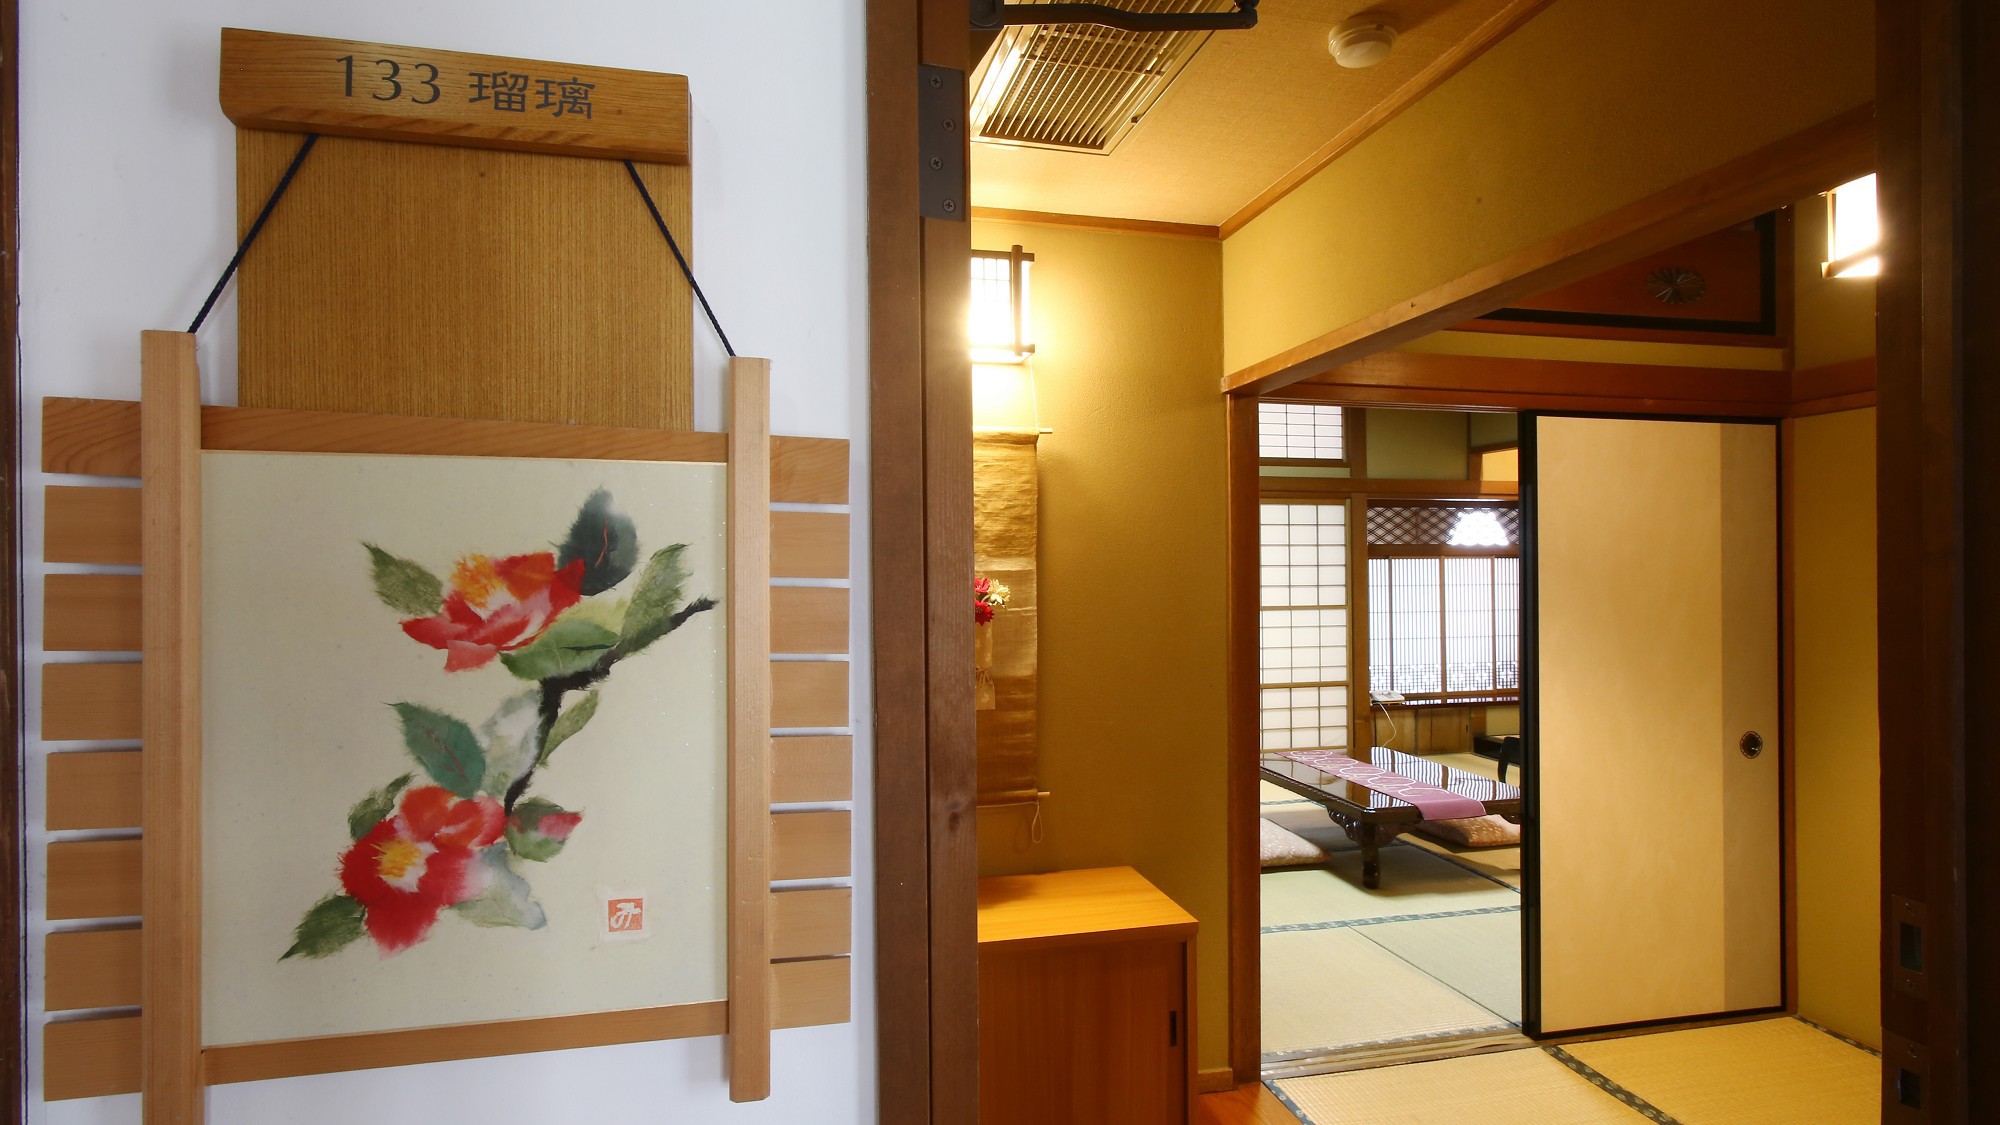 【瑠璃】木曽川を望む、檜造りの和室。和室10畳+広縁。